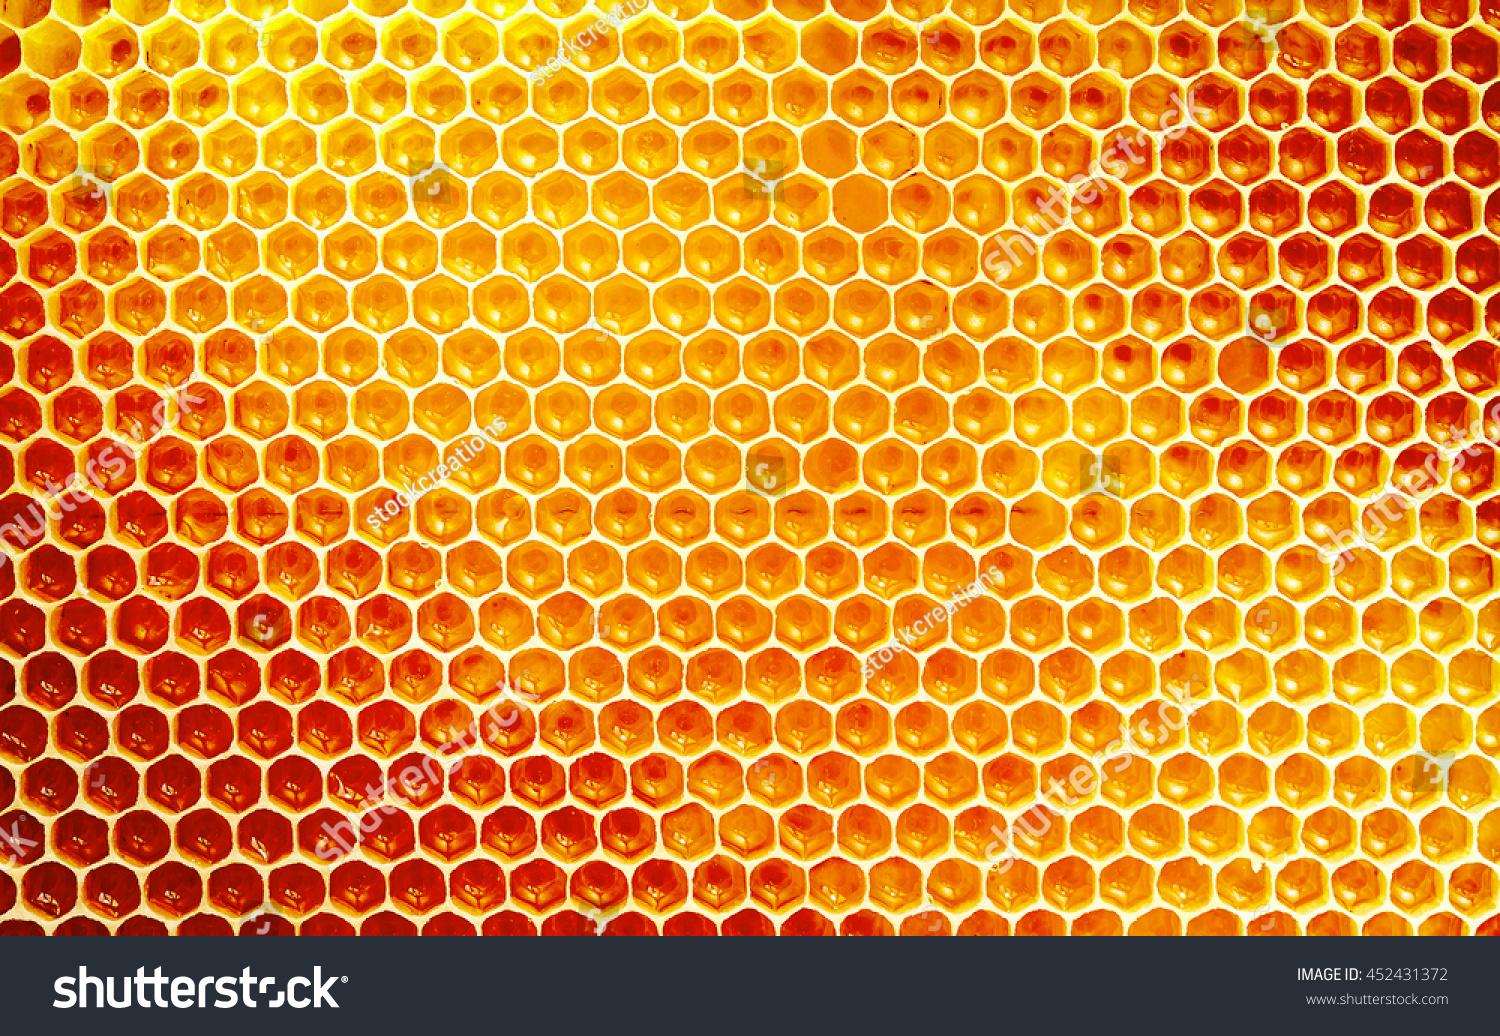 金色の蜂蜜を詰め込んだ蜂の巣からのワックスハニカムの部分の背景テクスチャーと模様 全枠表示 の写真素材 今すぐ編集